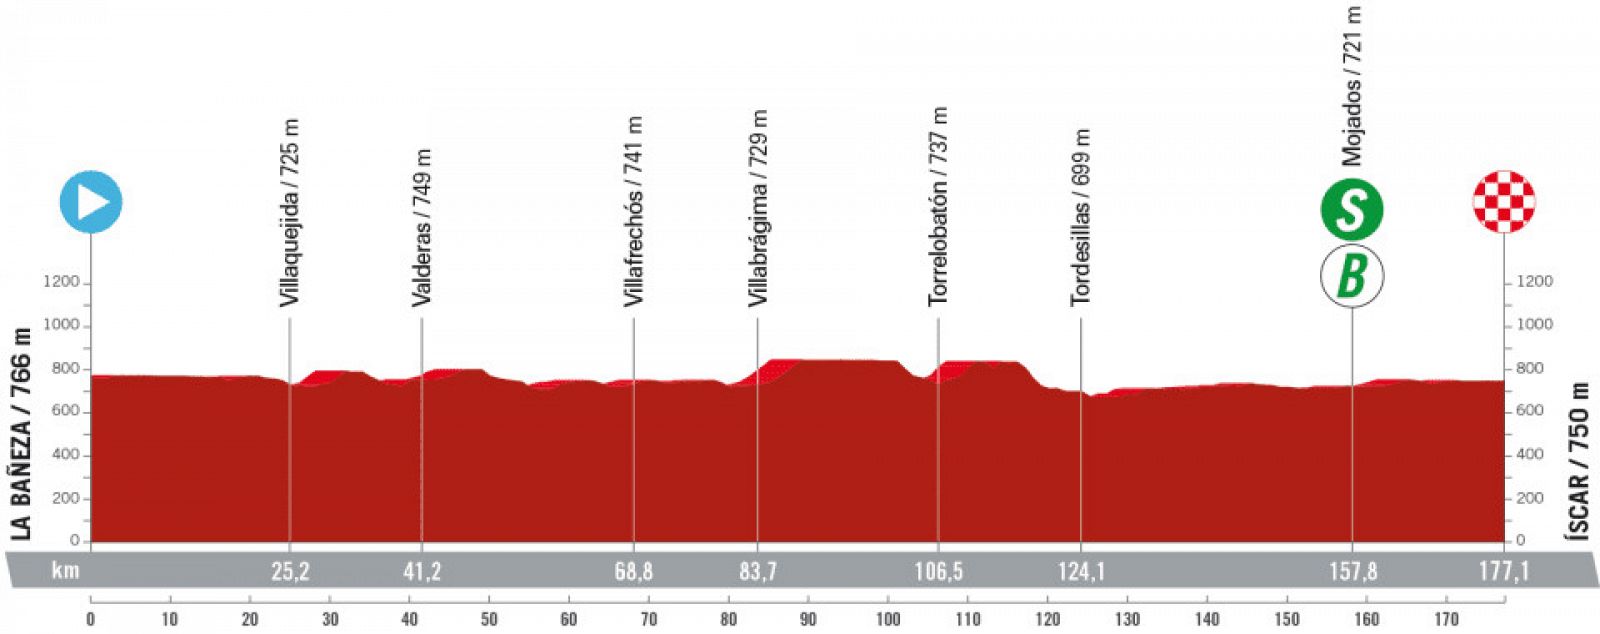 Vuelta a Espana: perfil de la etapa 19.